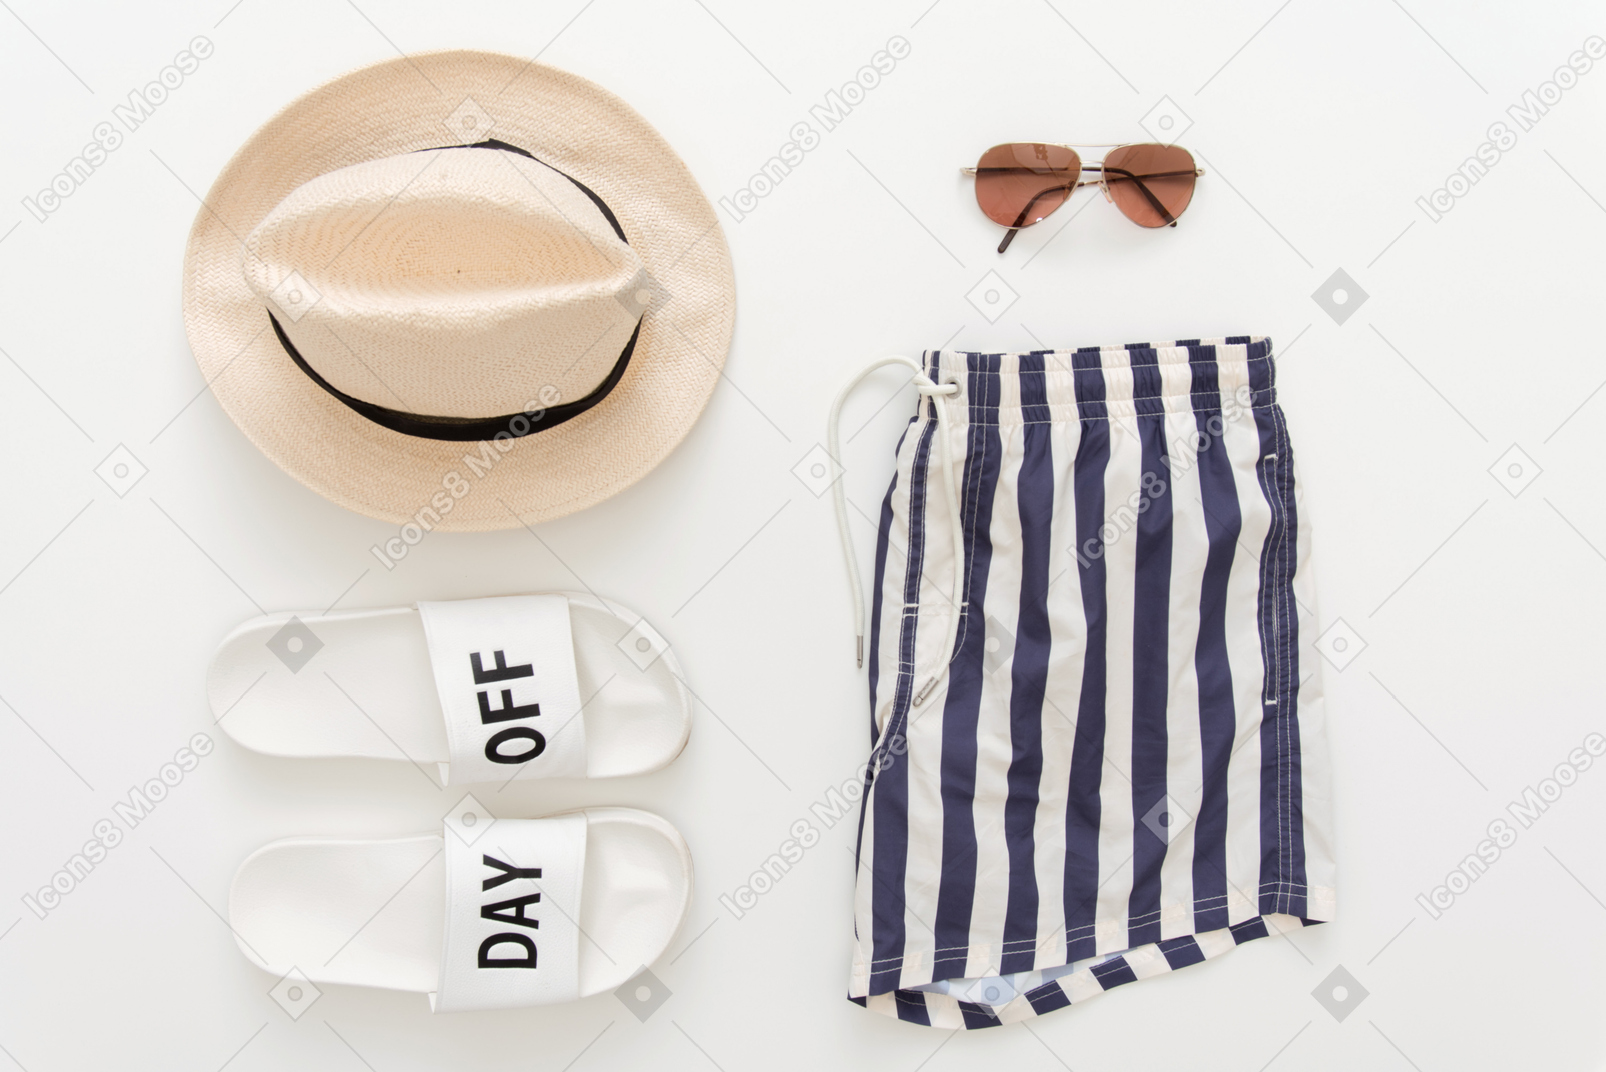 Шорты для купания, пляжные тапочки, шляпа и солнцезащитные очки